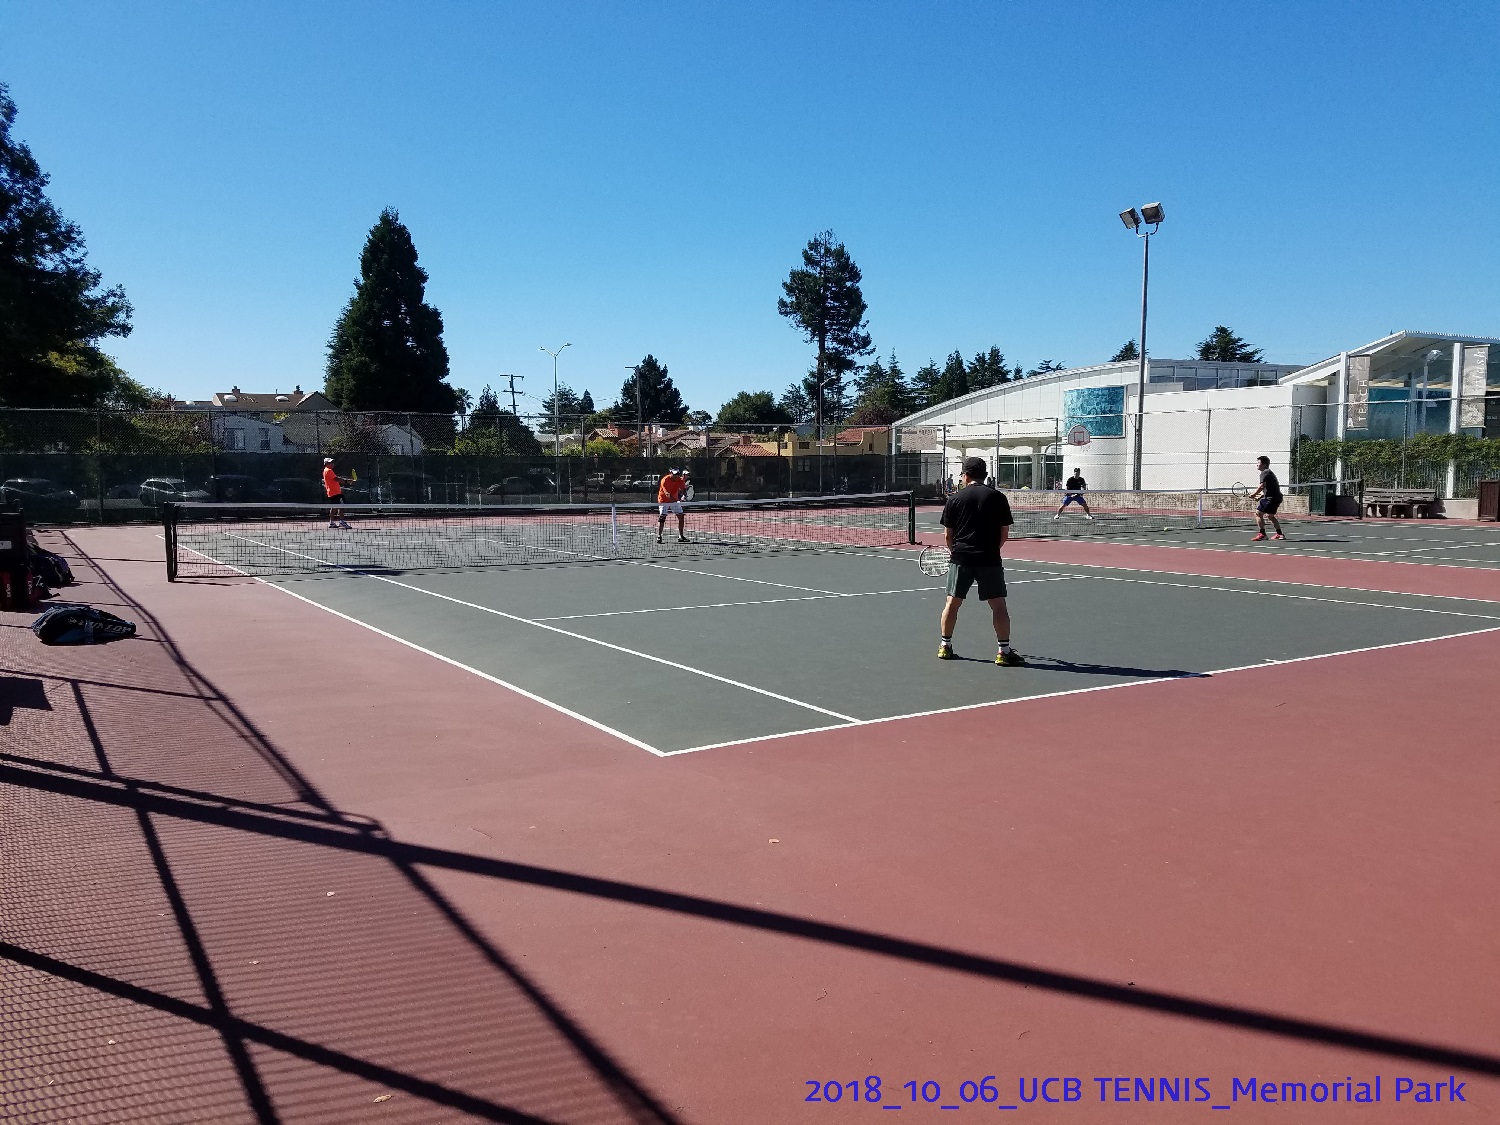 resized_2018_10_06_UCB Tennis at Memorial Park_113837.jpg